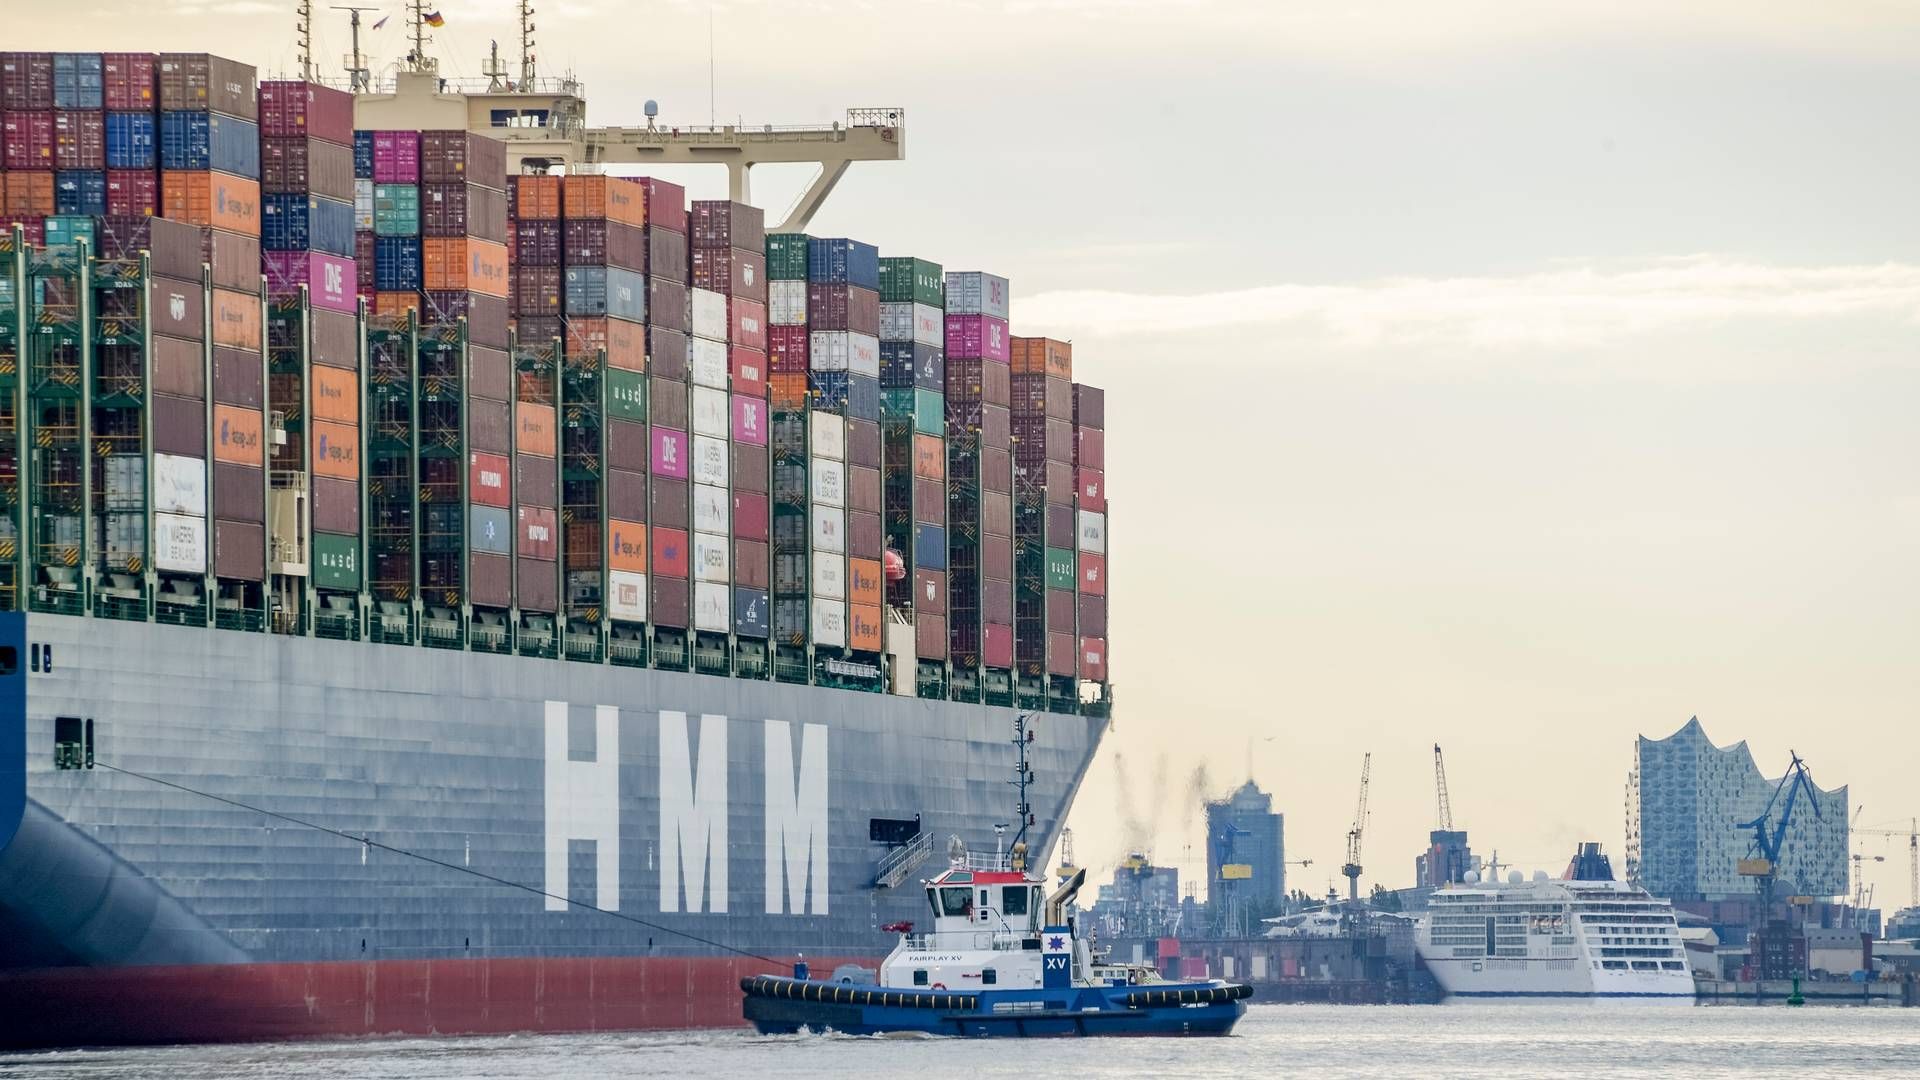 Hvis virksomheder skifter store containerskibe - som en af HMM's - ud med mindre skibe, når de skal have fragtet deres varer, kan det medvirke til en betragtelig stigning i klimaaftrykket.